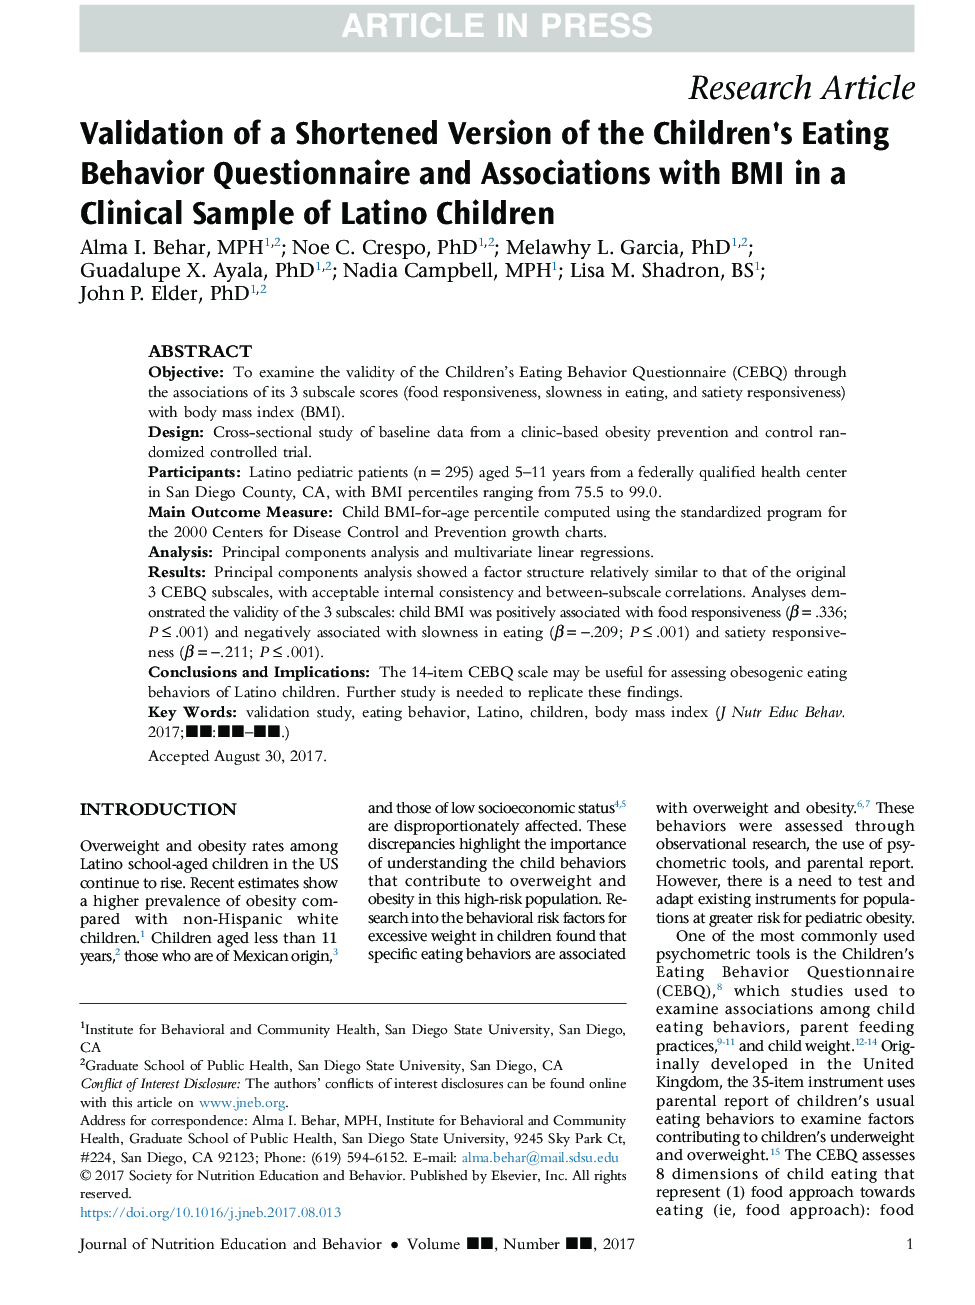 اعتبار یک نسخه کوتاه از پرسشنامه رفتار خوردن کودکان و انجمن با شاخص توده بدنی در یک نمونه بالینی از کودکان لاتین 